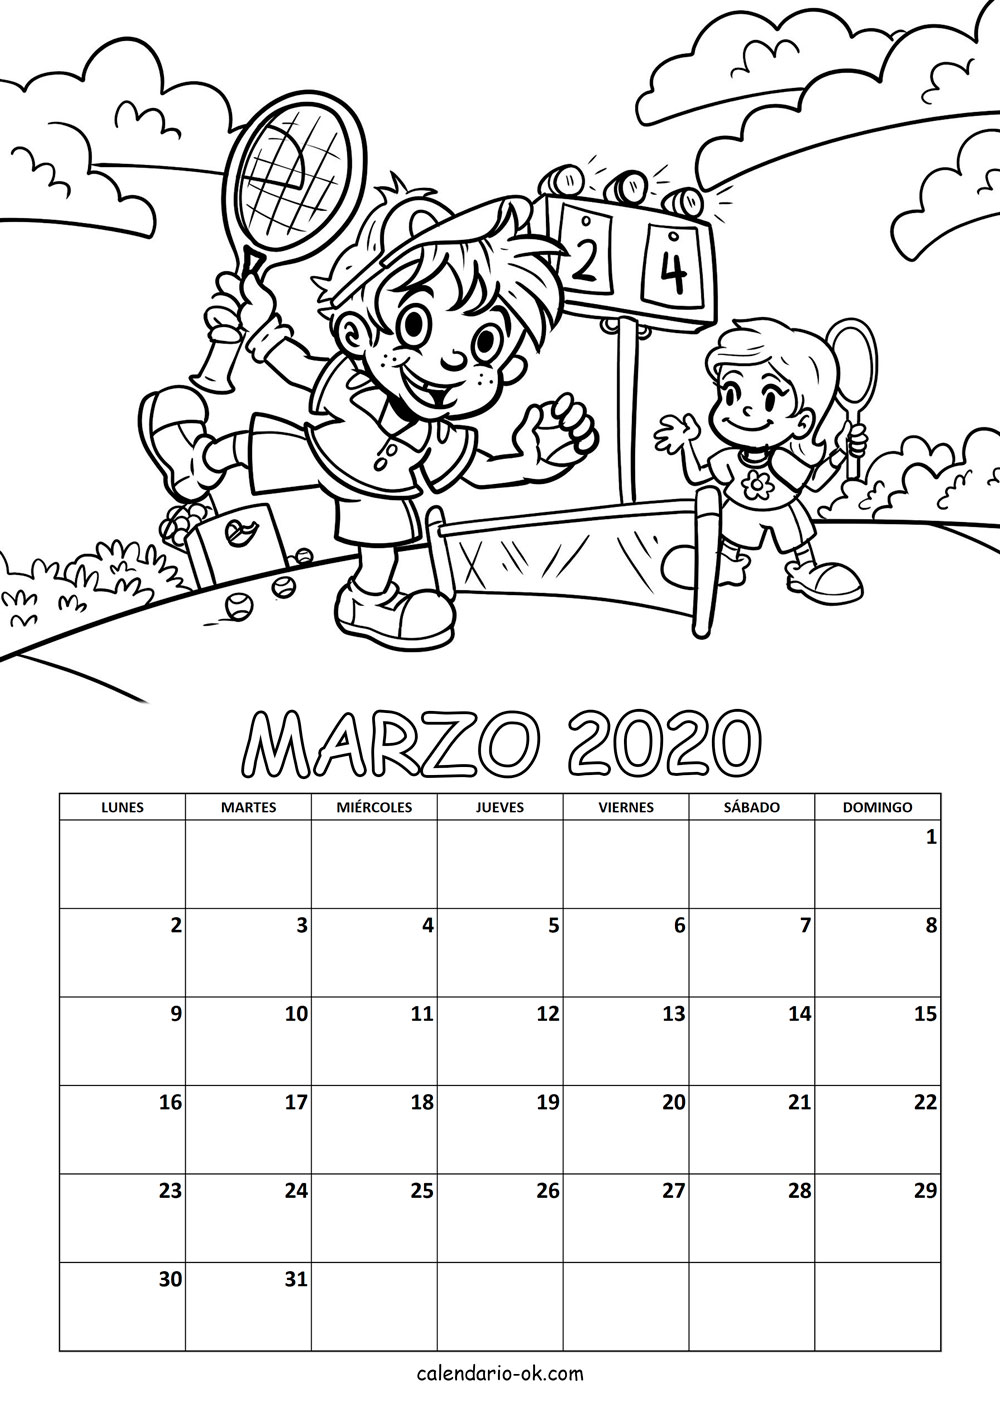 Calendario MARZO 2020 COLOREAR